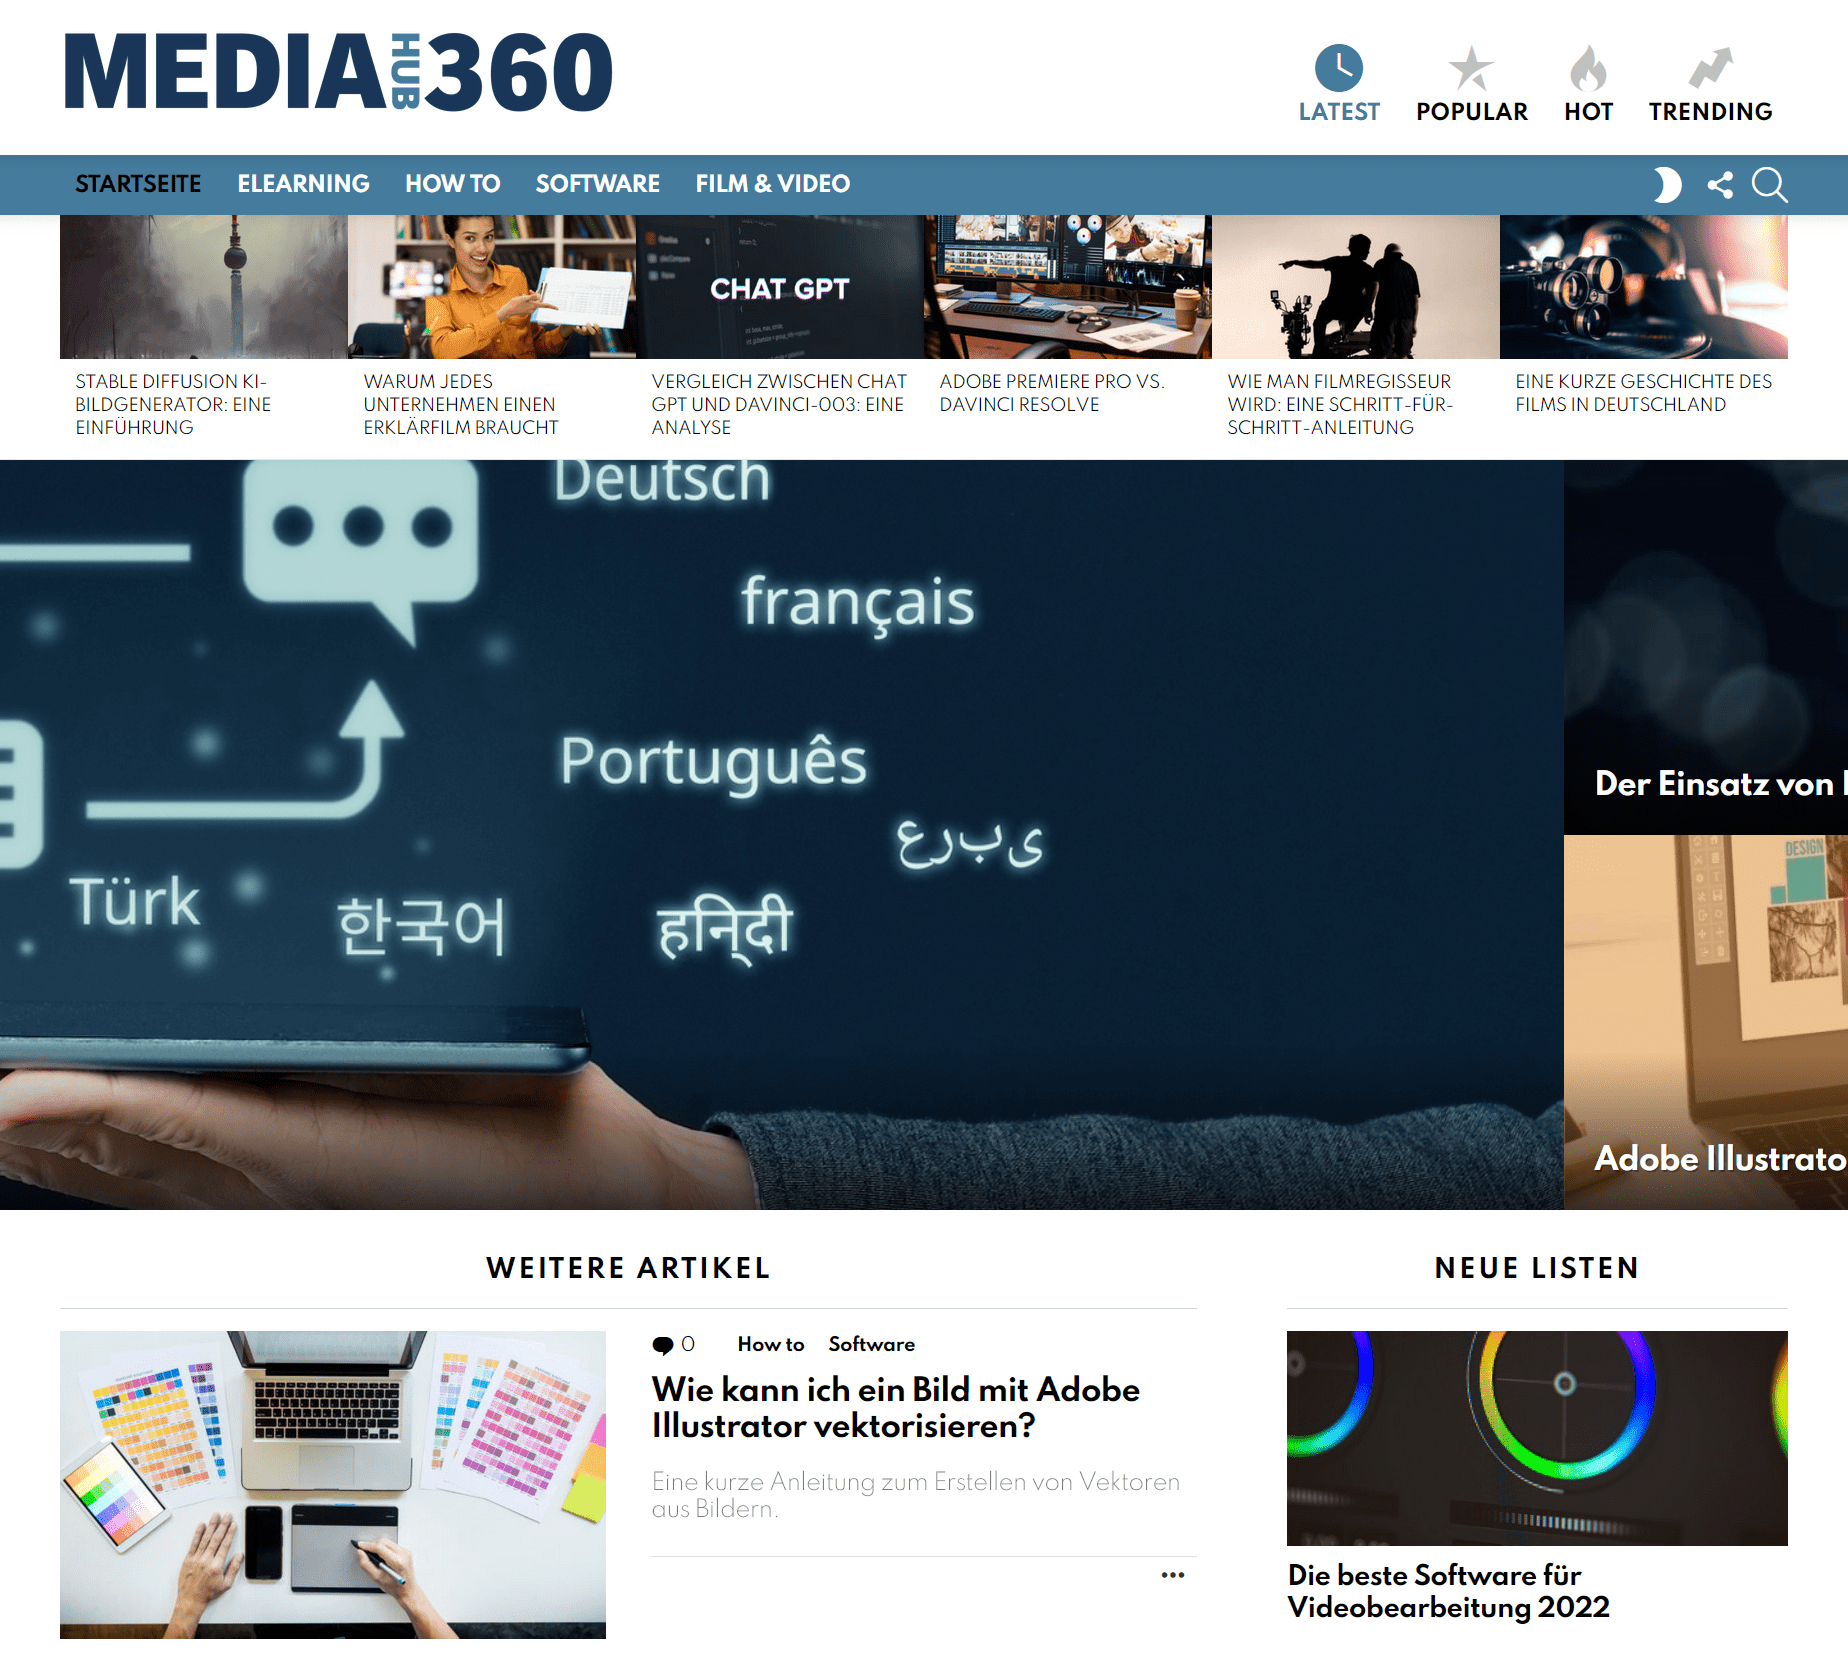 Mediahub360 startseite that works media